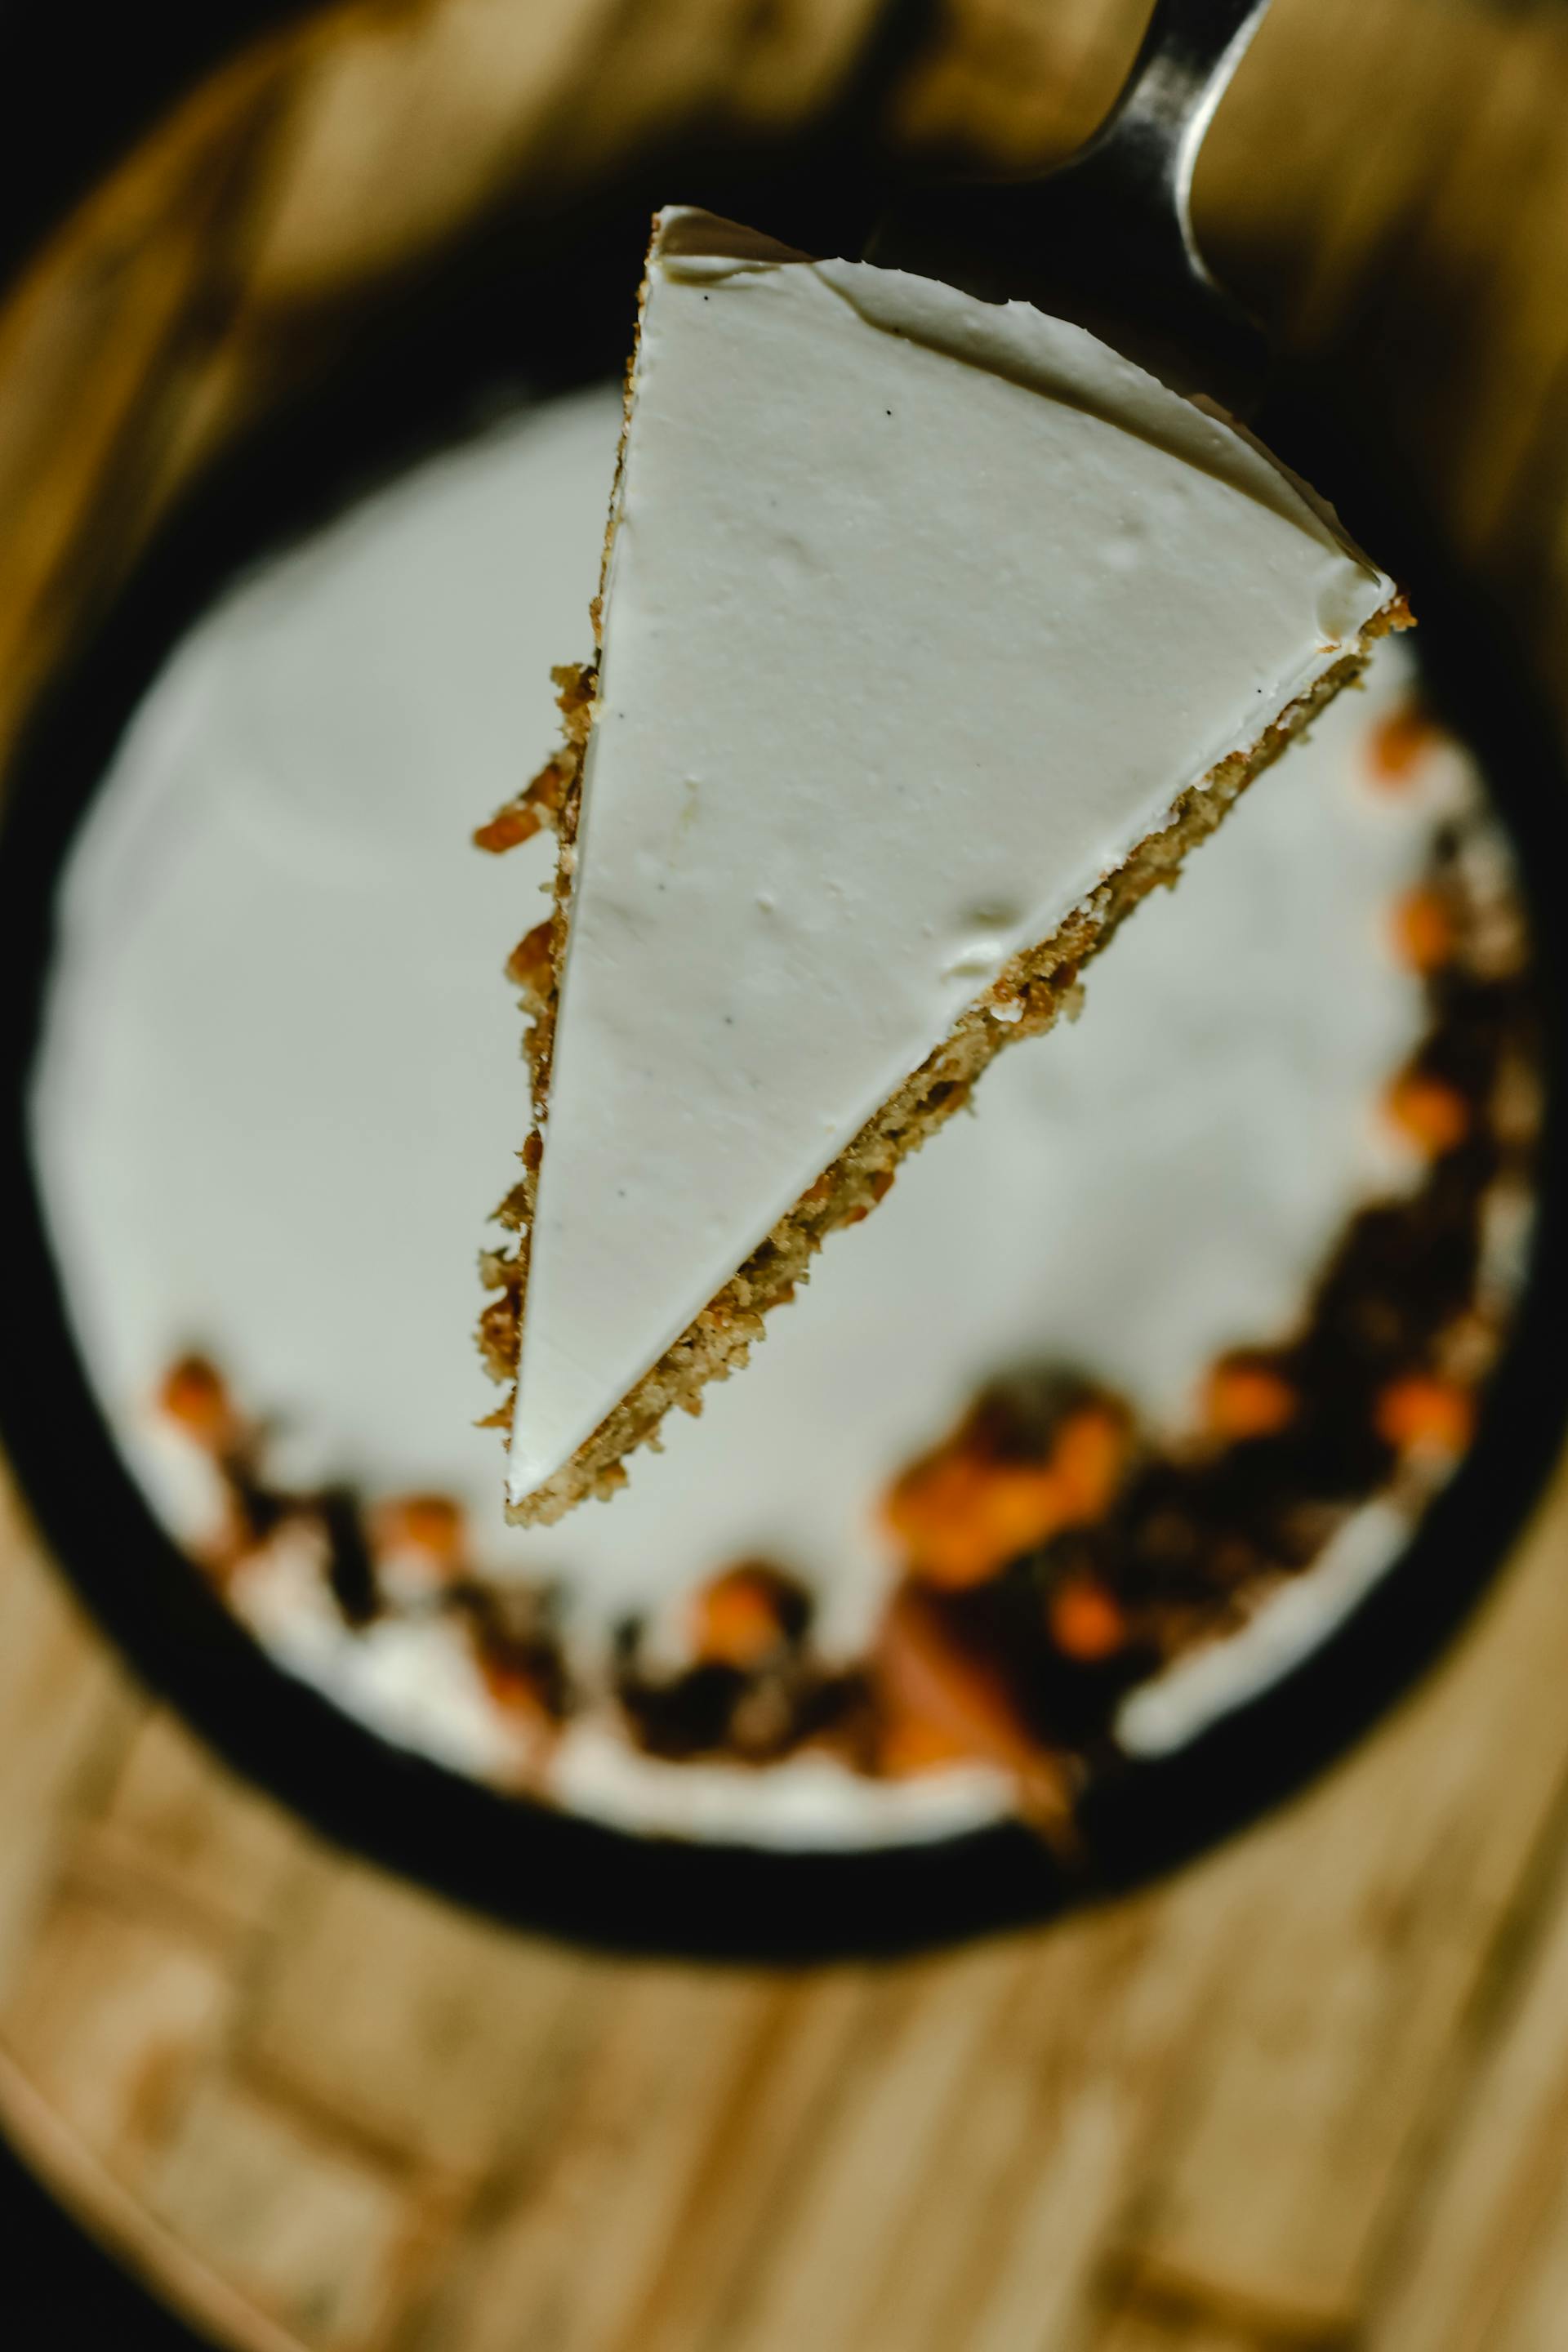 Vista superior de un trozo de pastel de zanahoria | Fuente: Pexels